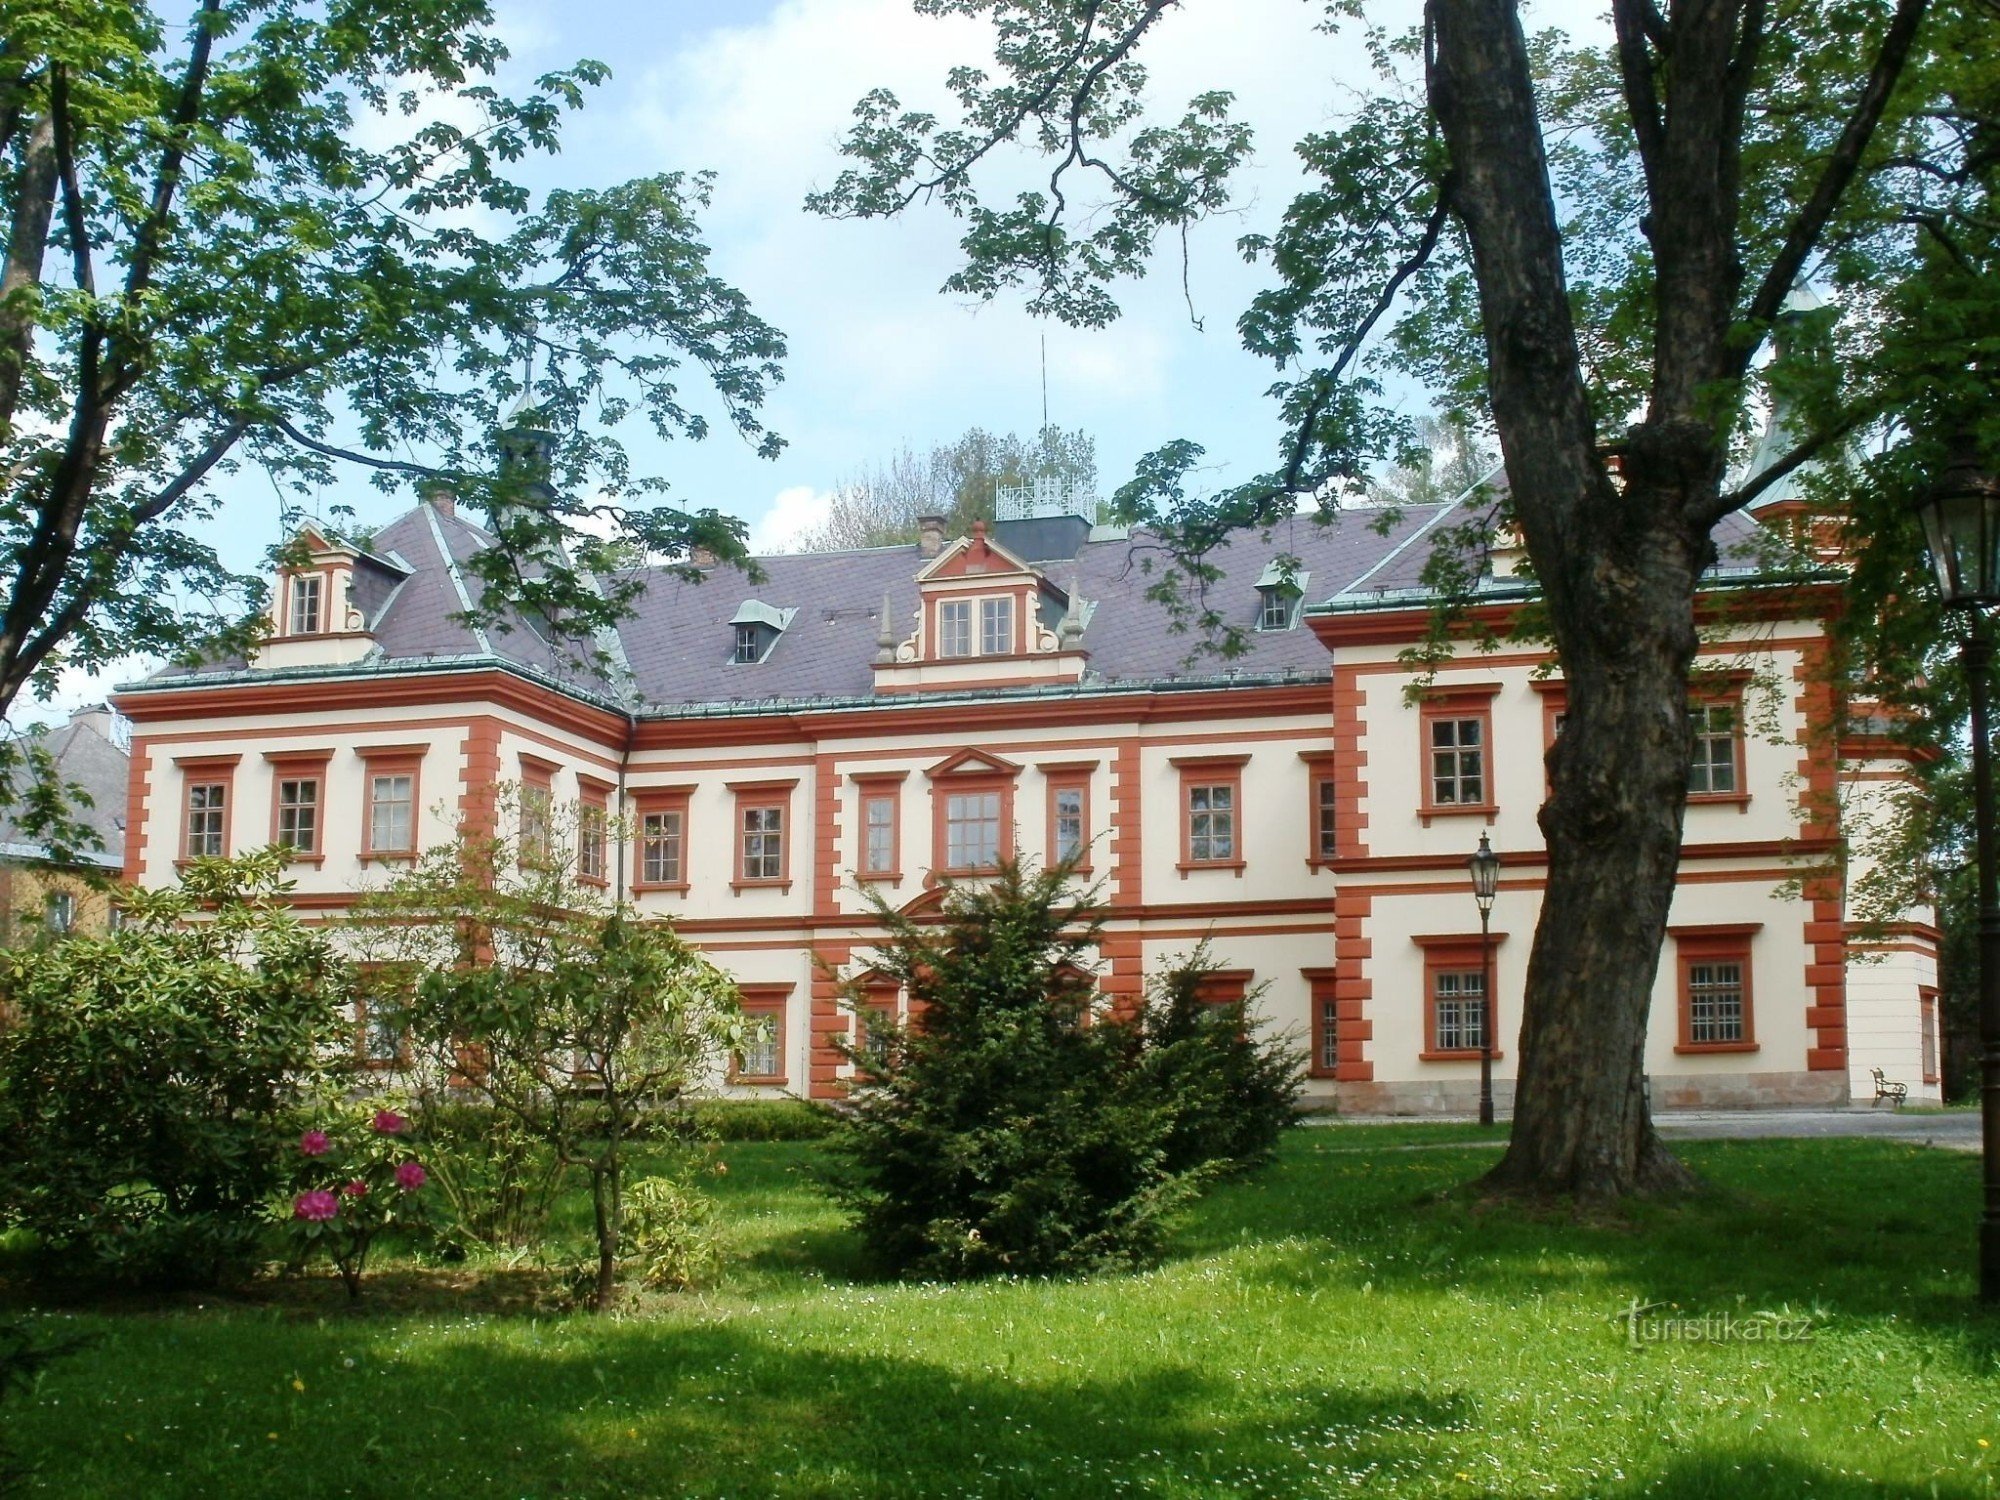 Йилемнице - музей Крконоше, замок